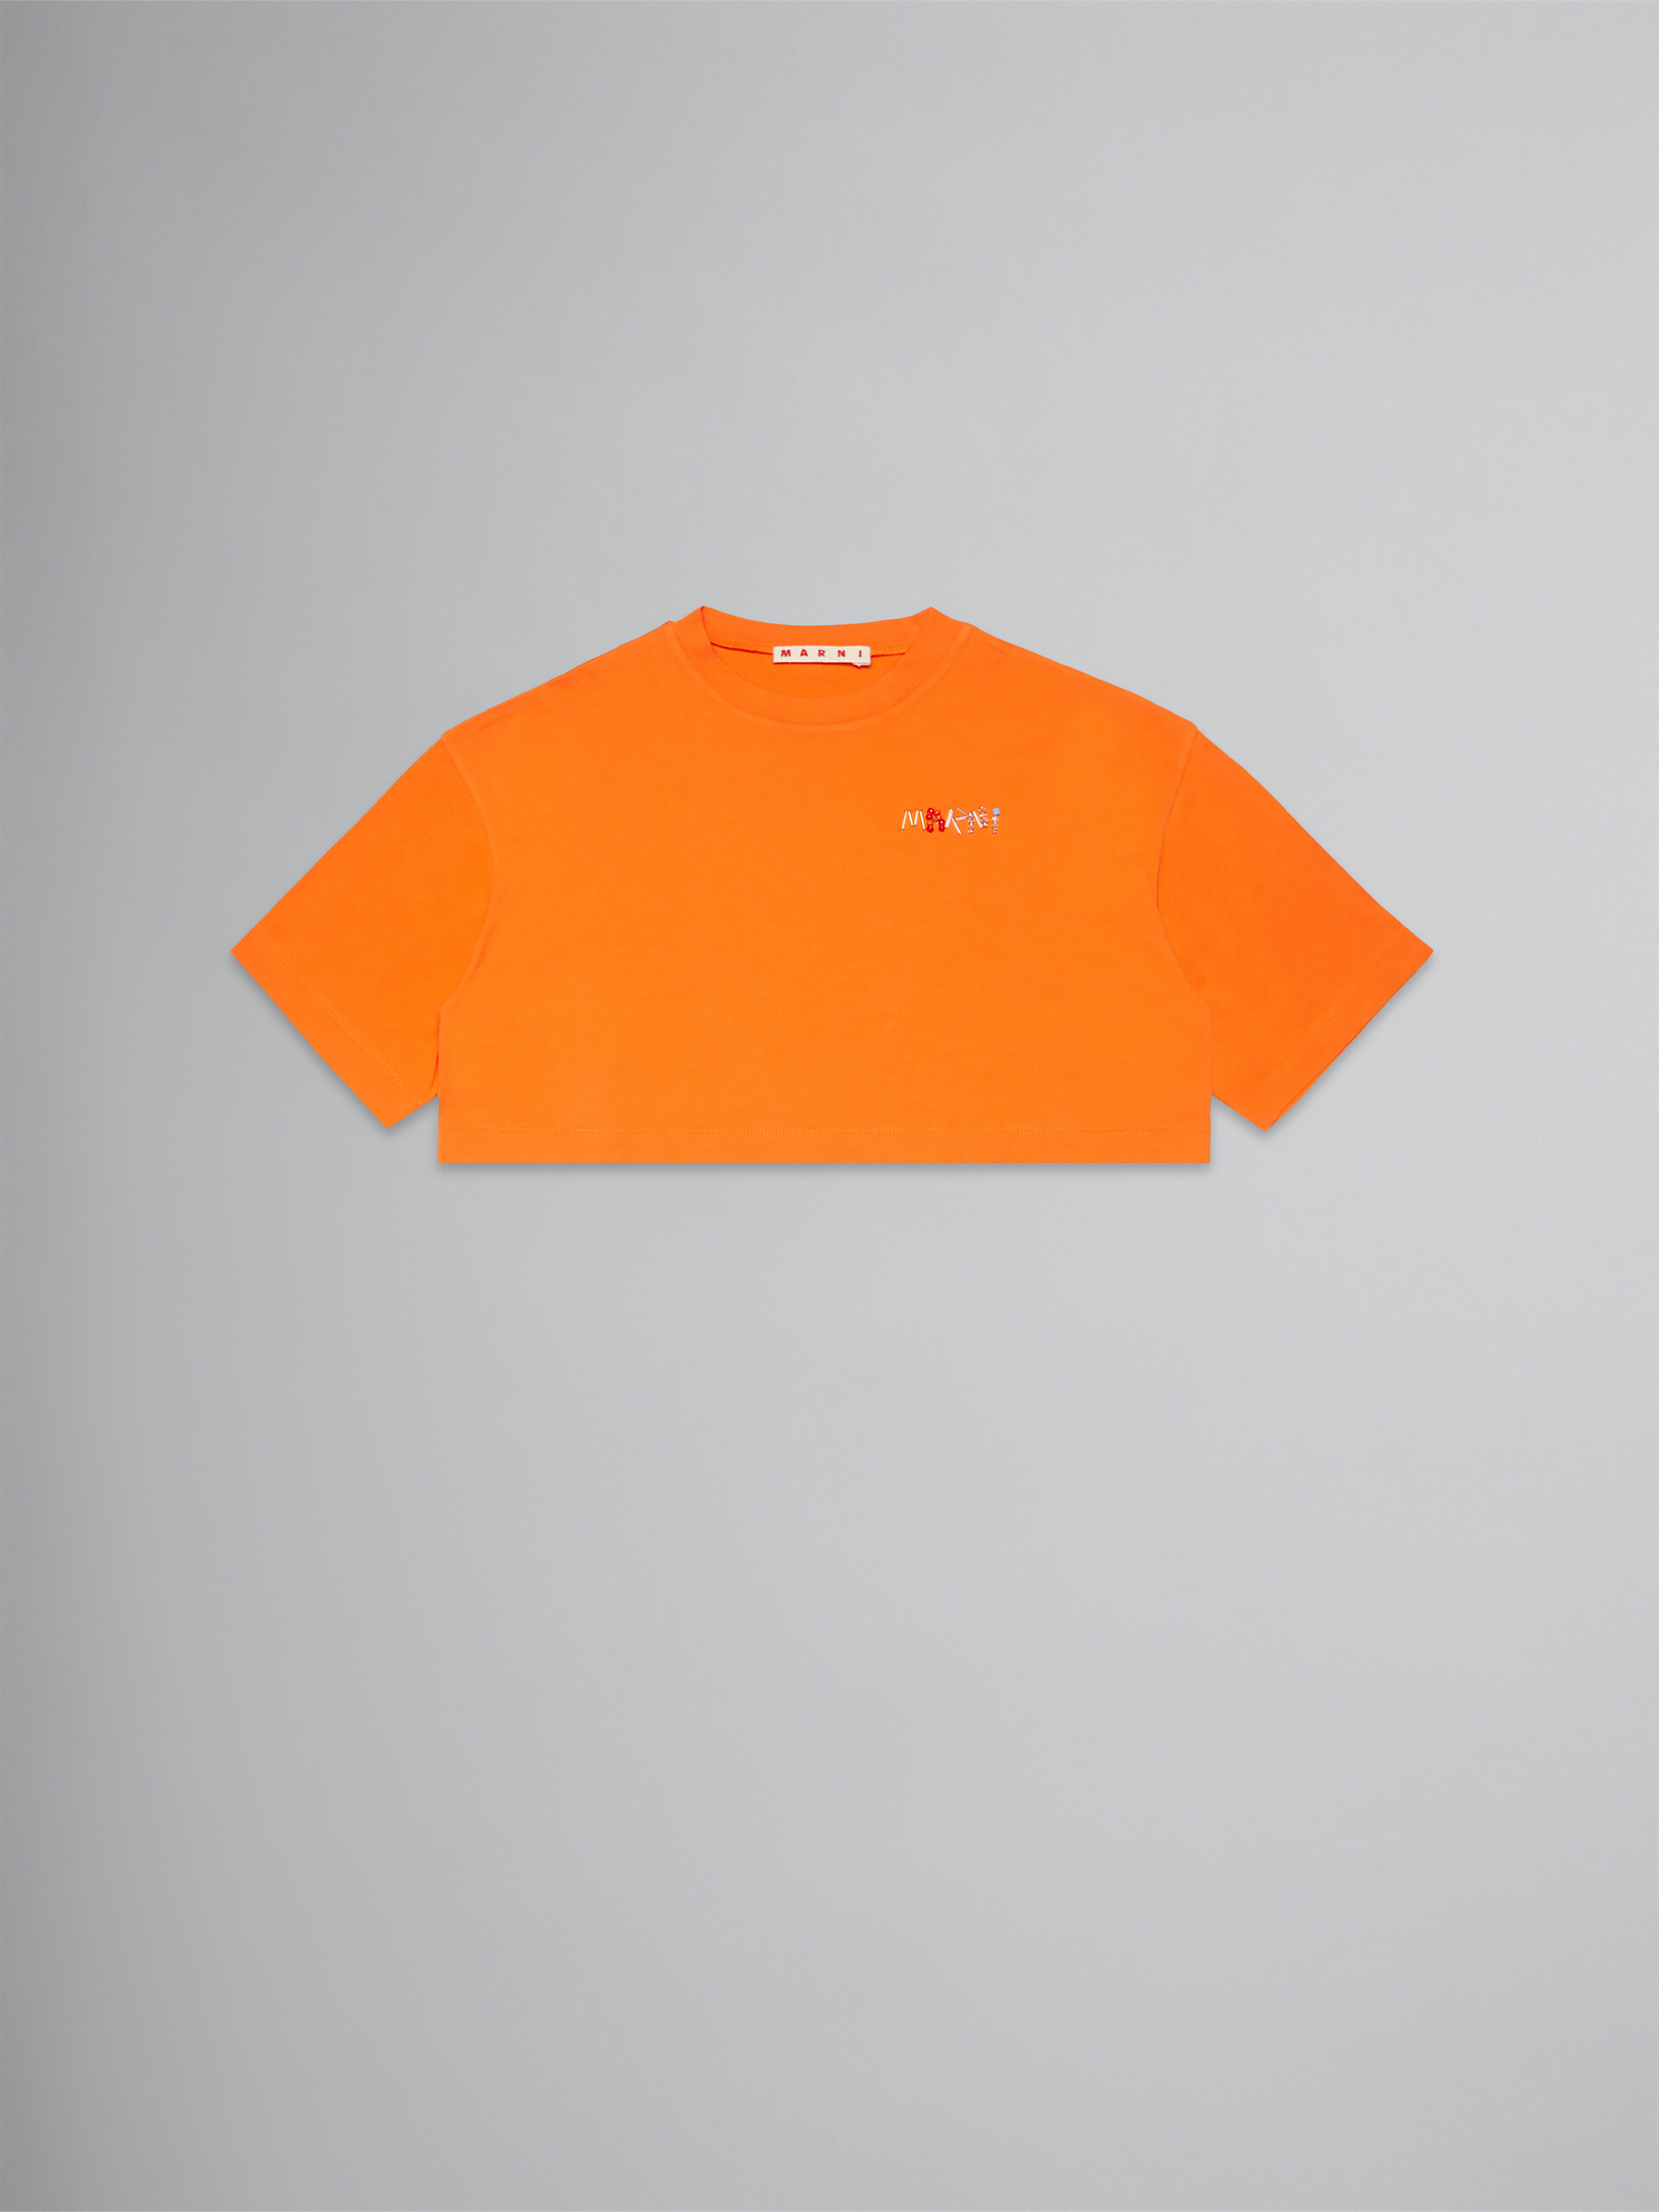 Orange cropped T-shirt with logo - T-shirts - Image 1